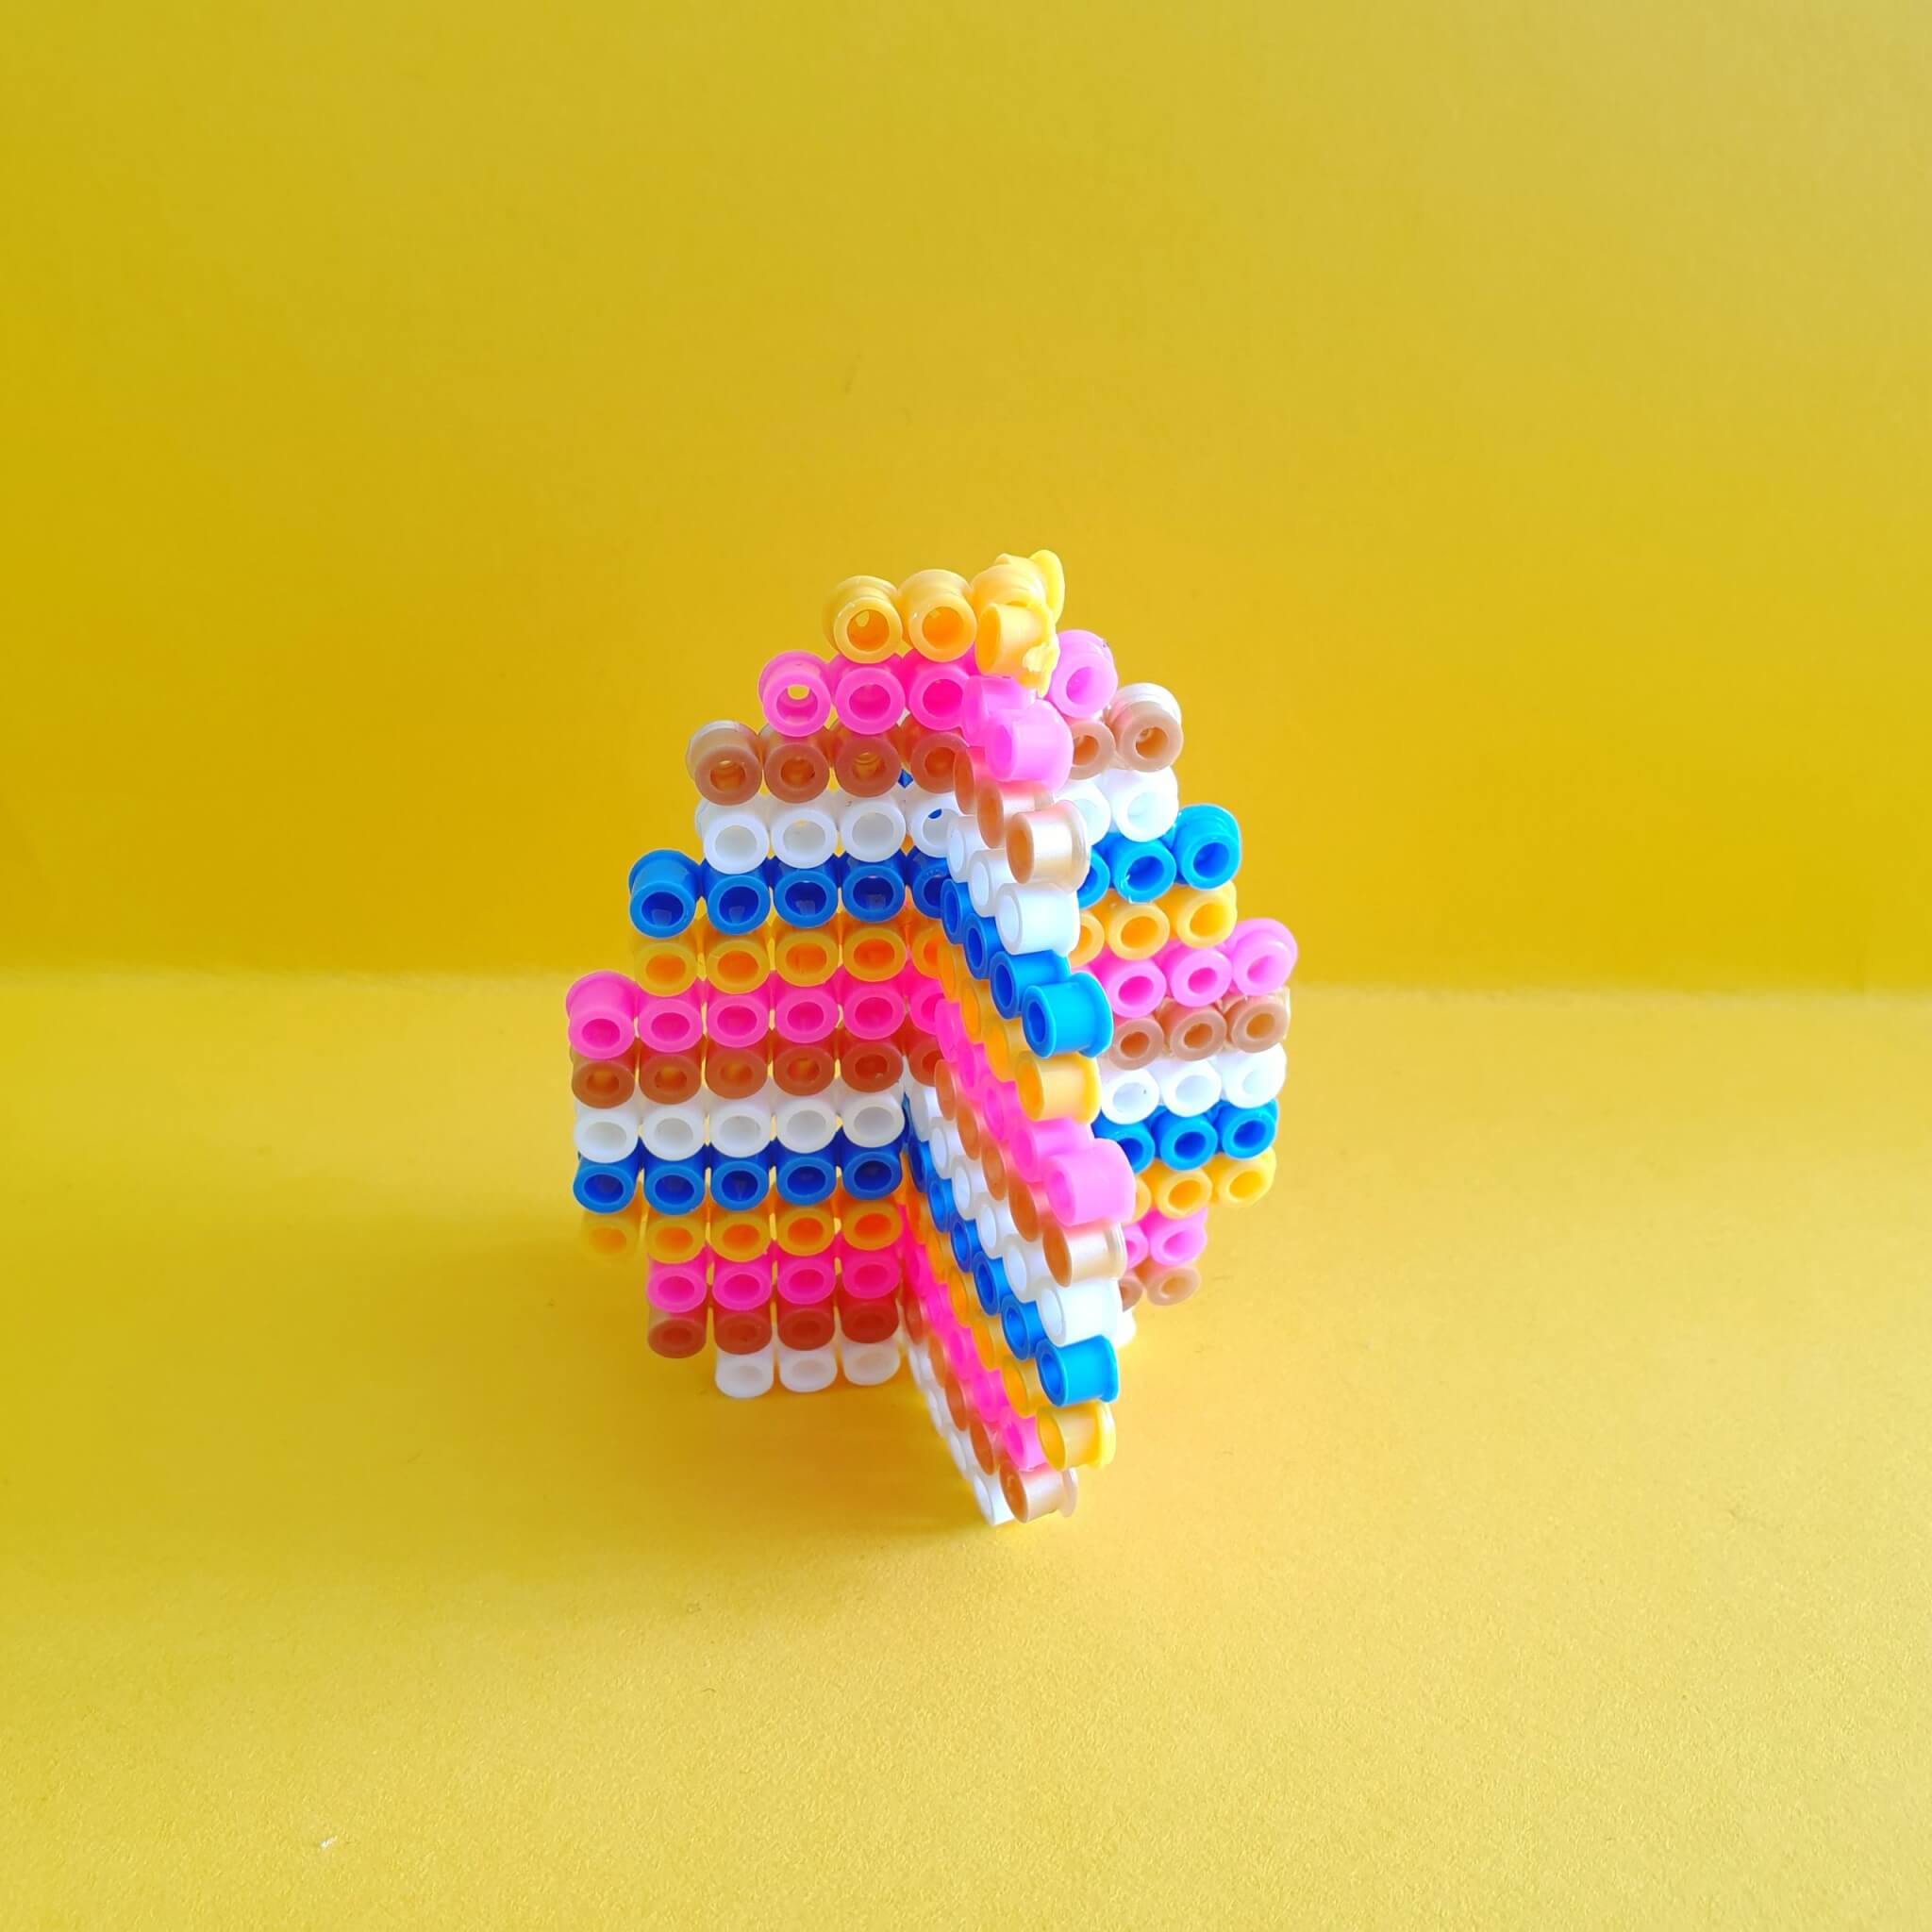 101 voorbeelden om te knutselen met strijkkralen. Voor Pasen kun je leuke kleurrijke knutselwerkjes maken. Hoe leuk is dit 3d paasei van strijkkralen?